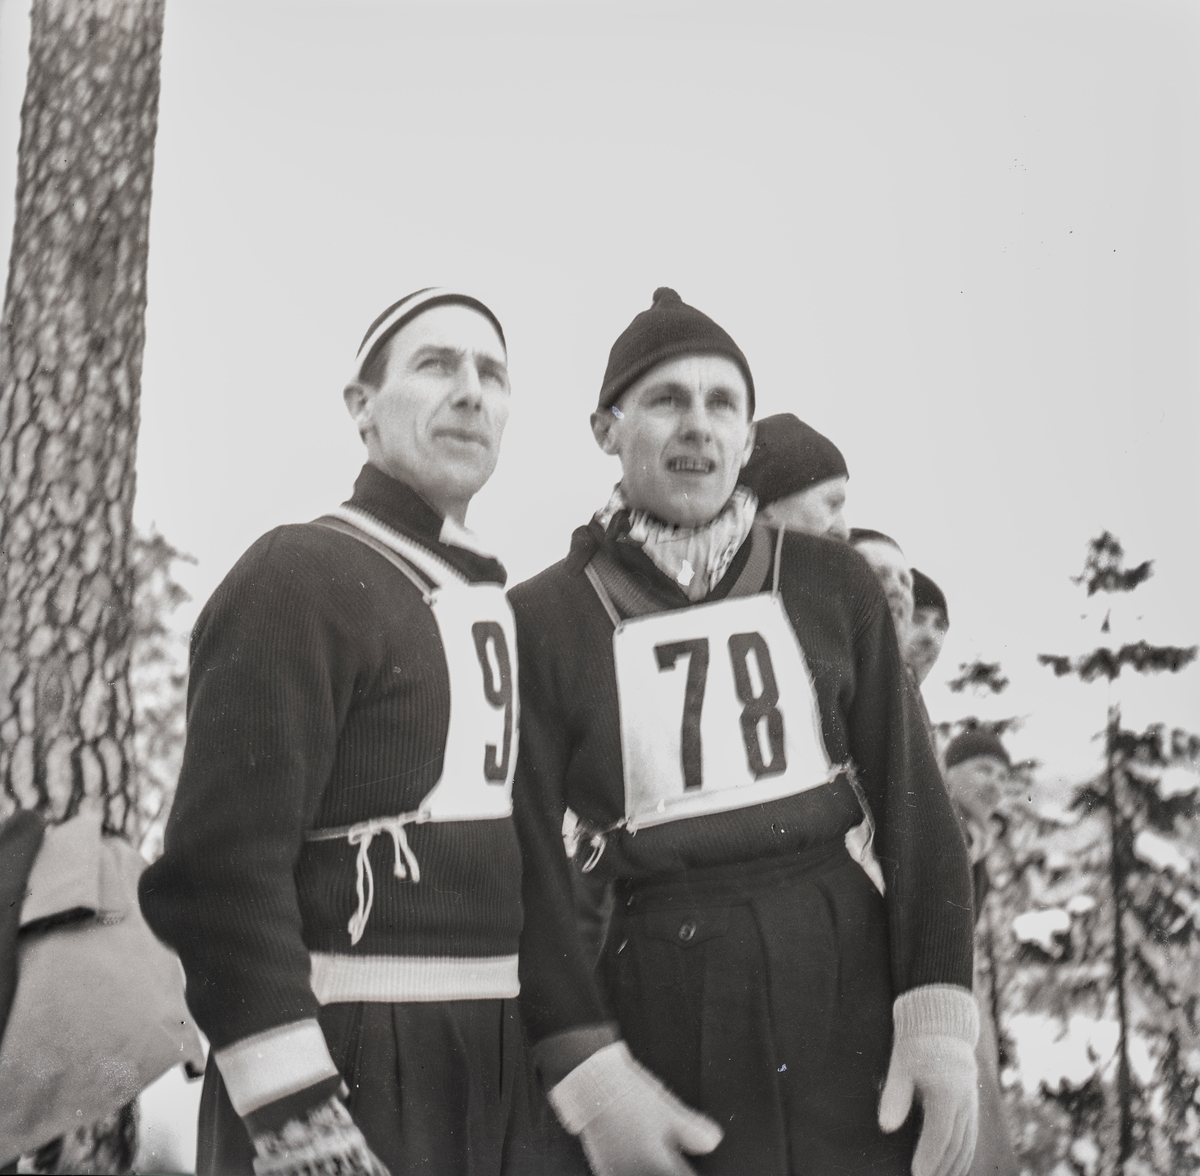 Two Kongsberg skiers